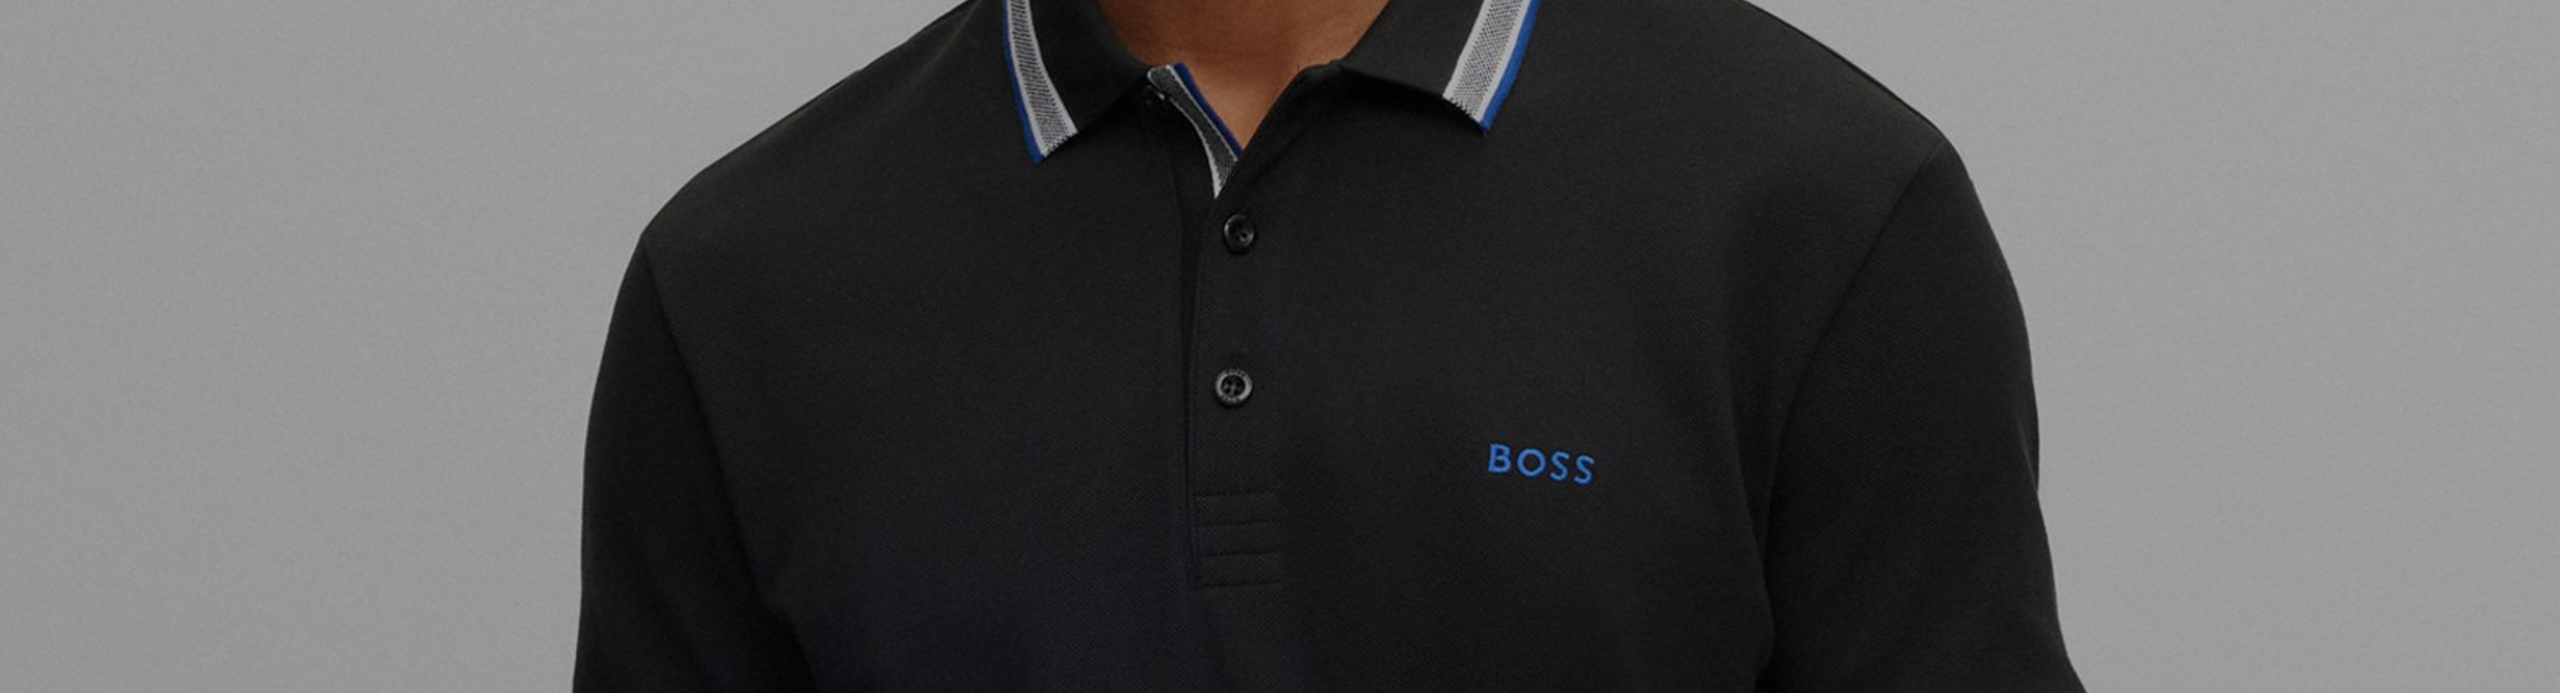 T-shirt Hugo Boss noir